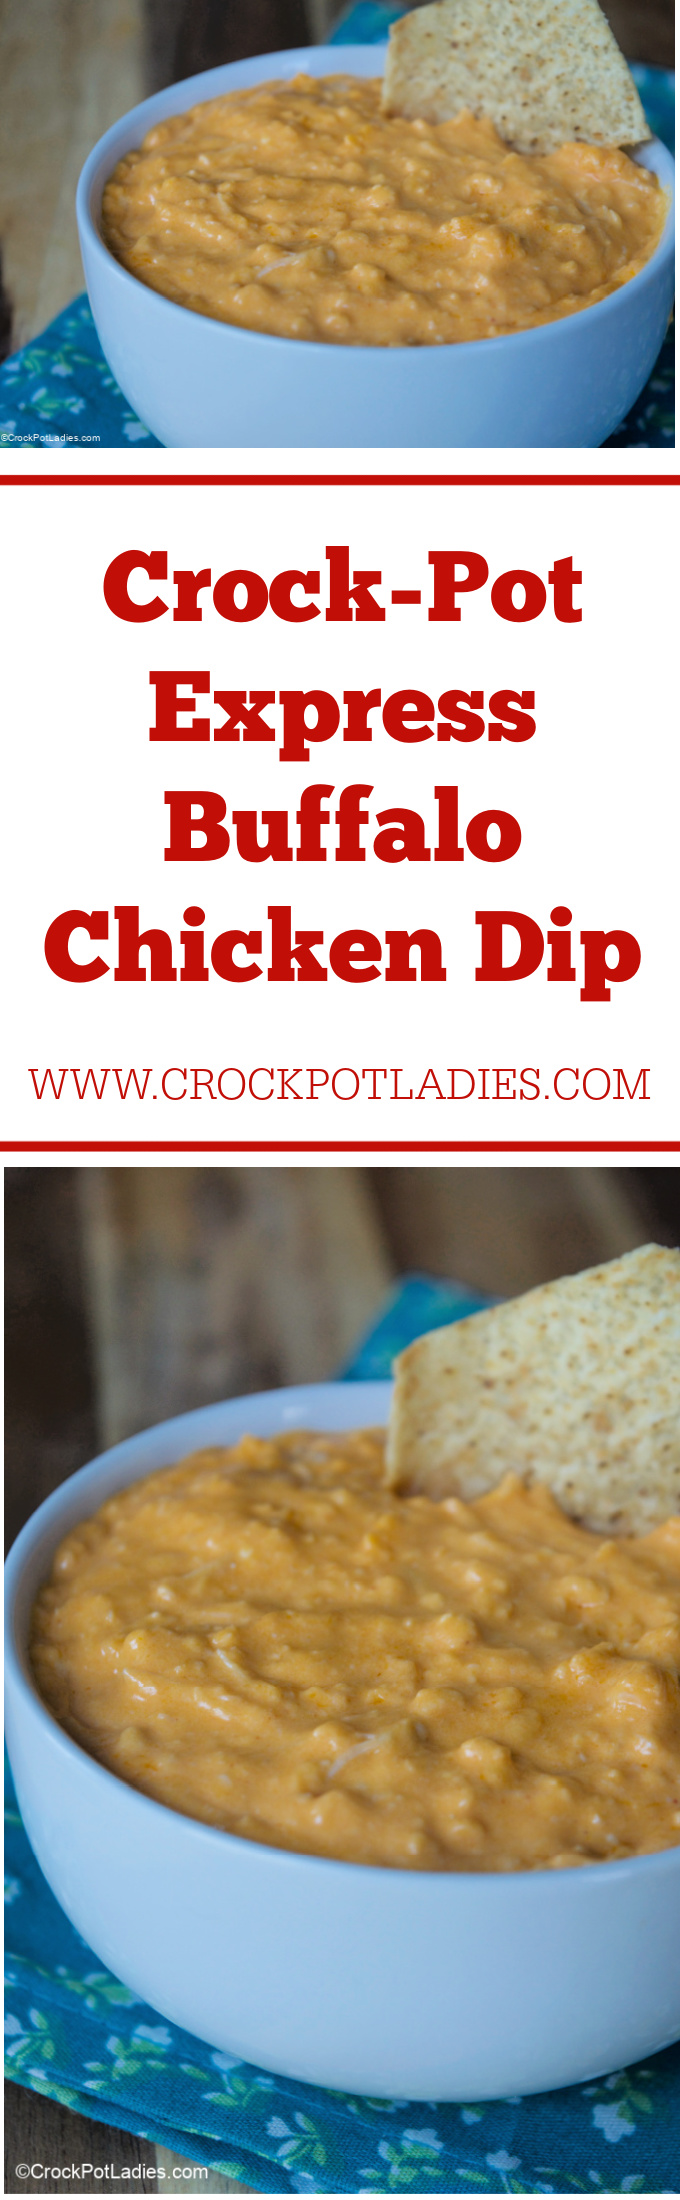 Crock-Pot Express Buffalo Chicken Dip